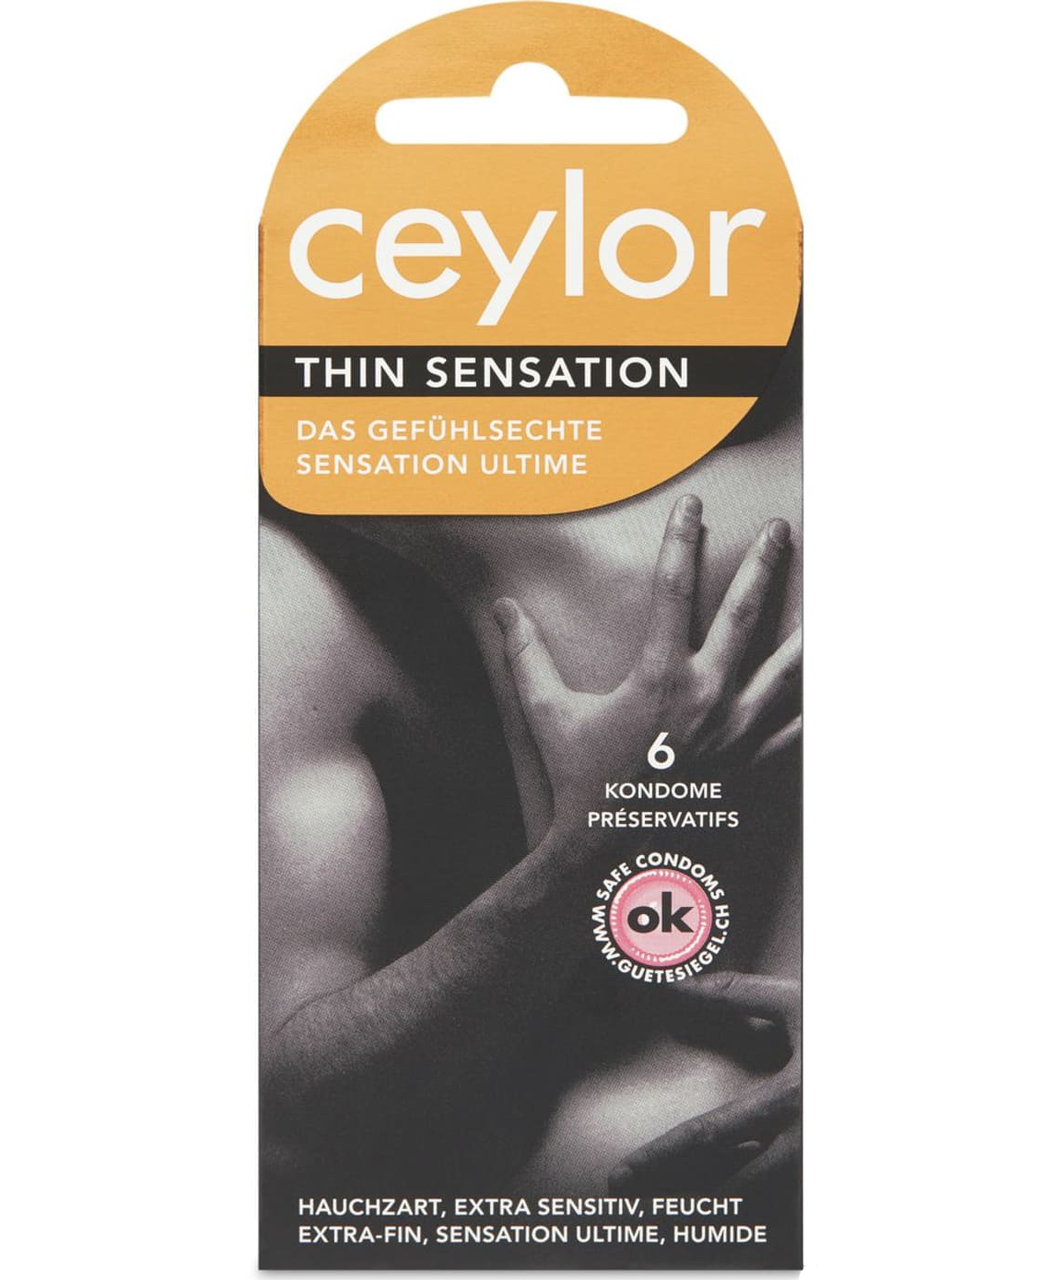 Ceylor Thin Sensation condoms (6 / 9 pcs)